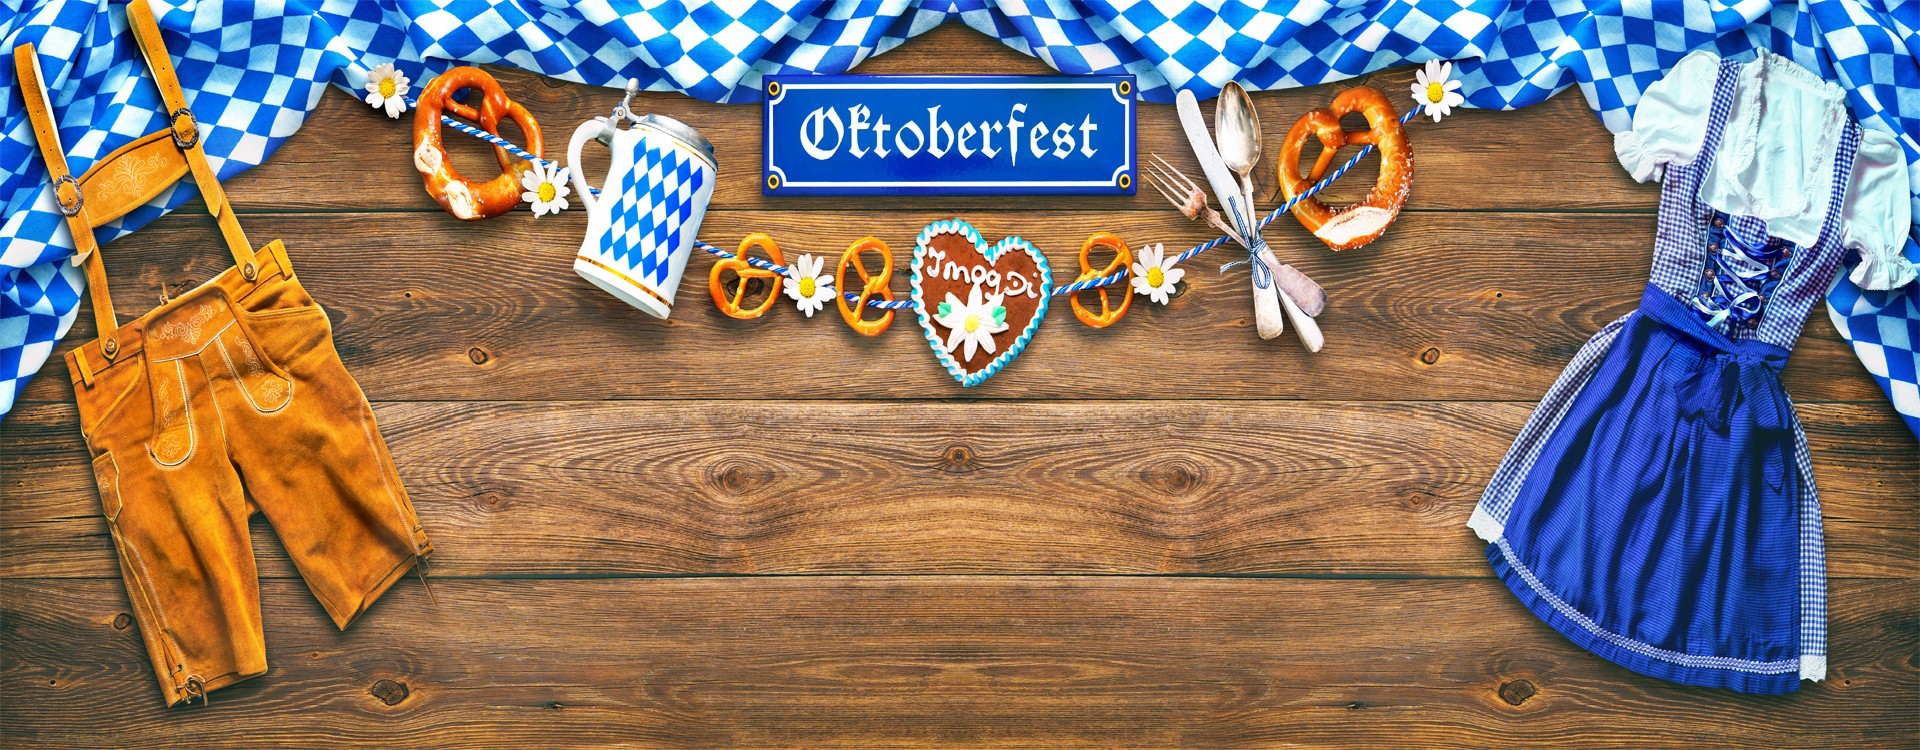 Oktoberfest: Verdens Største Ølfestival